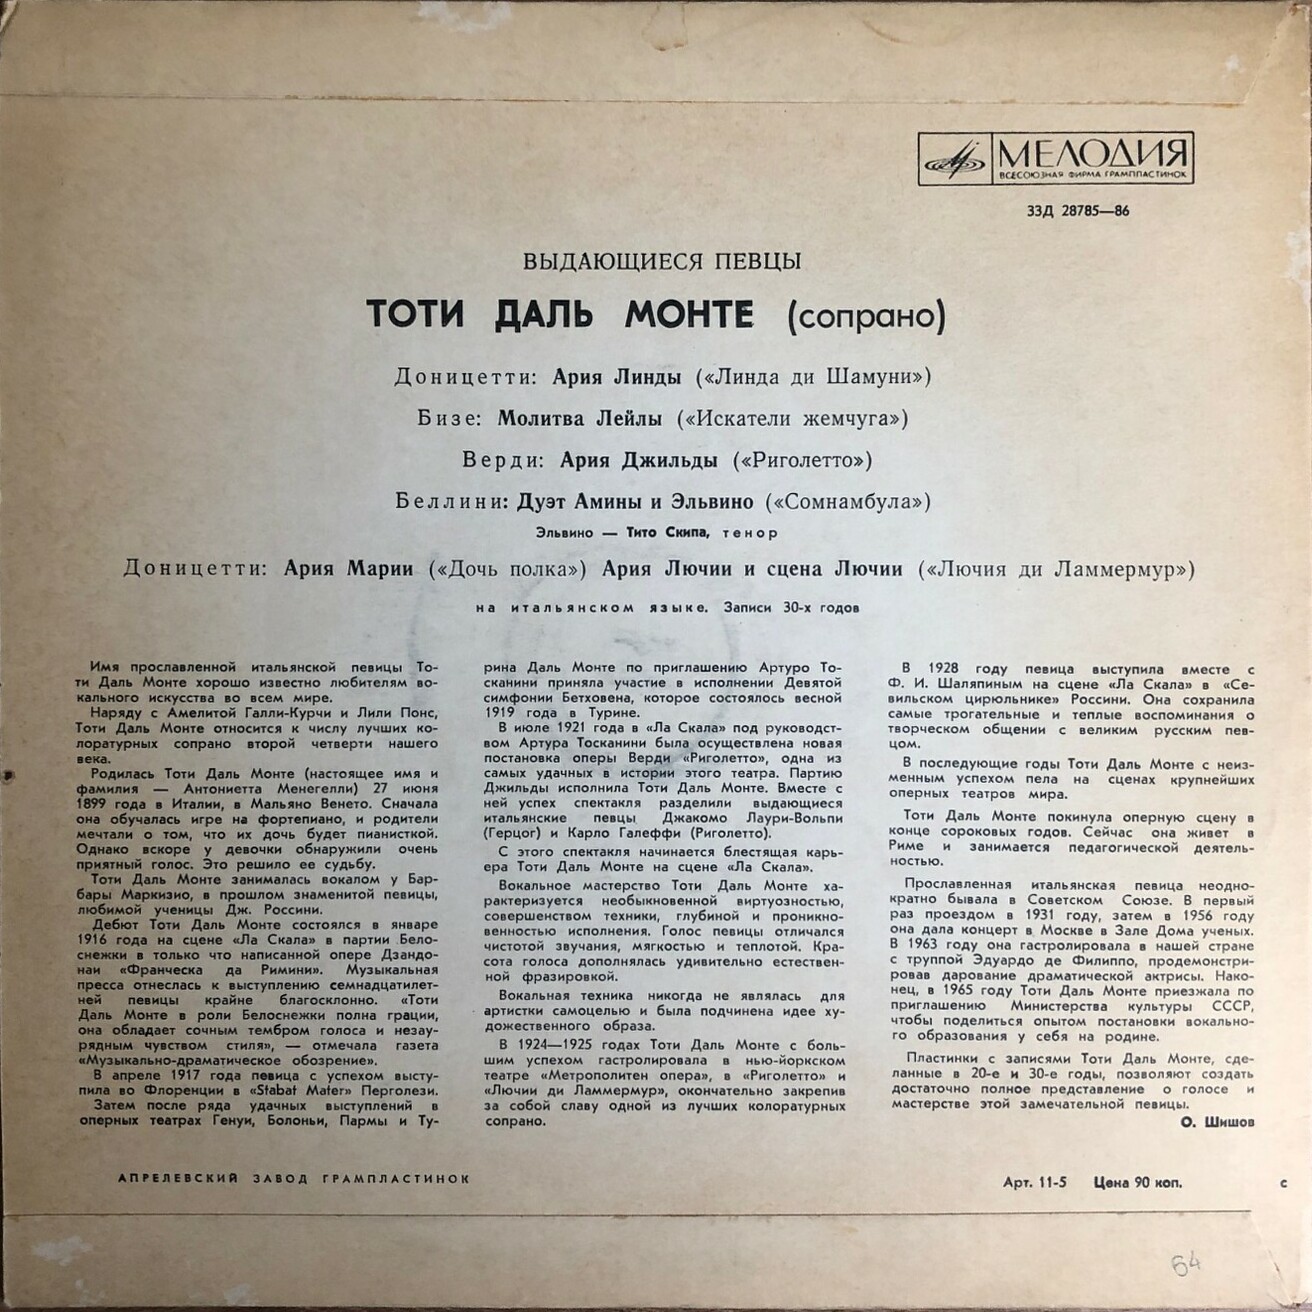 Тоти Даль Монте, сопрано ("Выдающиеся певцы")